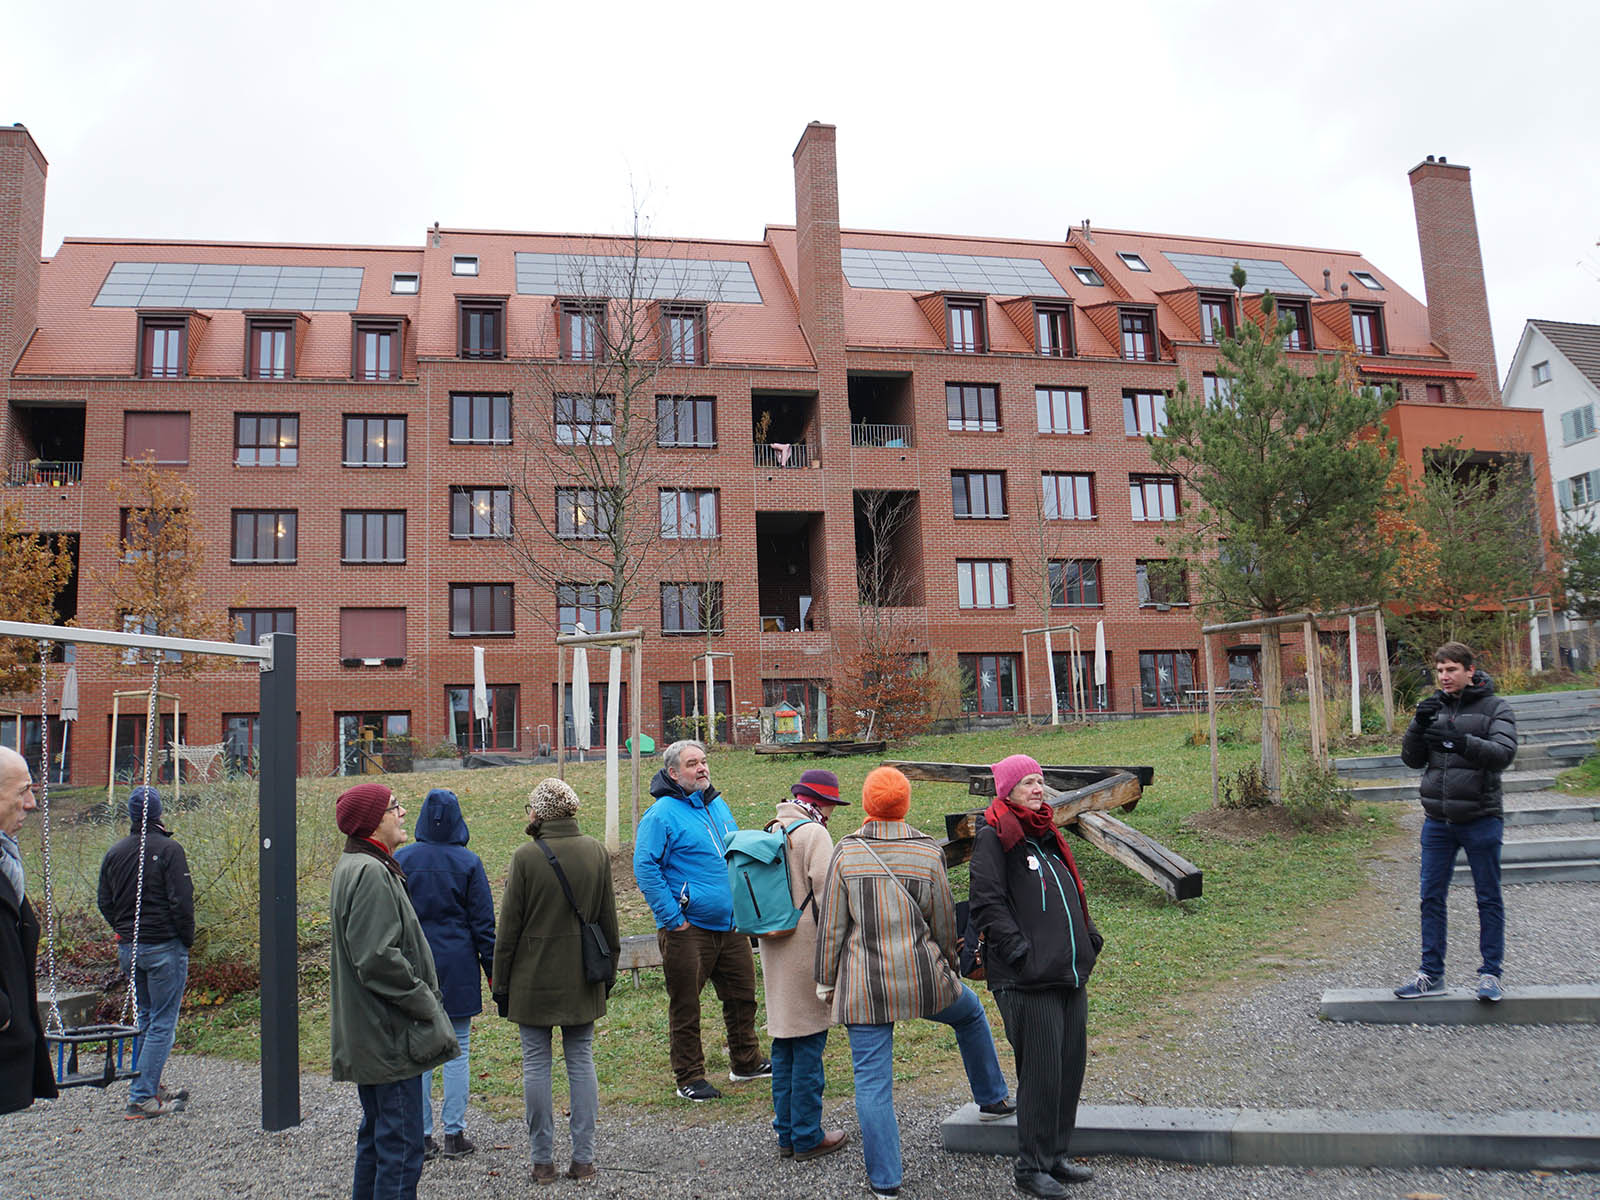 Das neue studentische Wohnen in Wipkingen ist vorbildlich und schafft einen neuen Park für die ganze Bevölkerung. Florian Utz (rechts) erklärt hier, wo wir nach zehn Jahren mit dem Drittelsziel für bezahlbare Wohnungen sind.